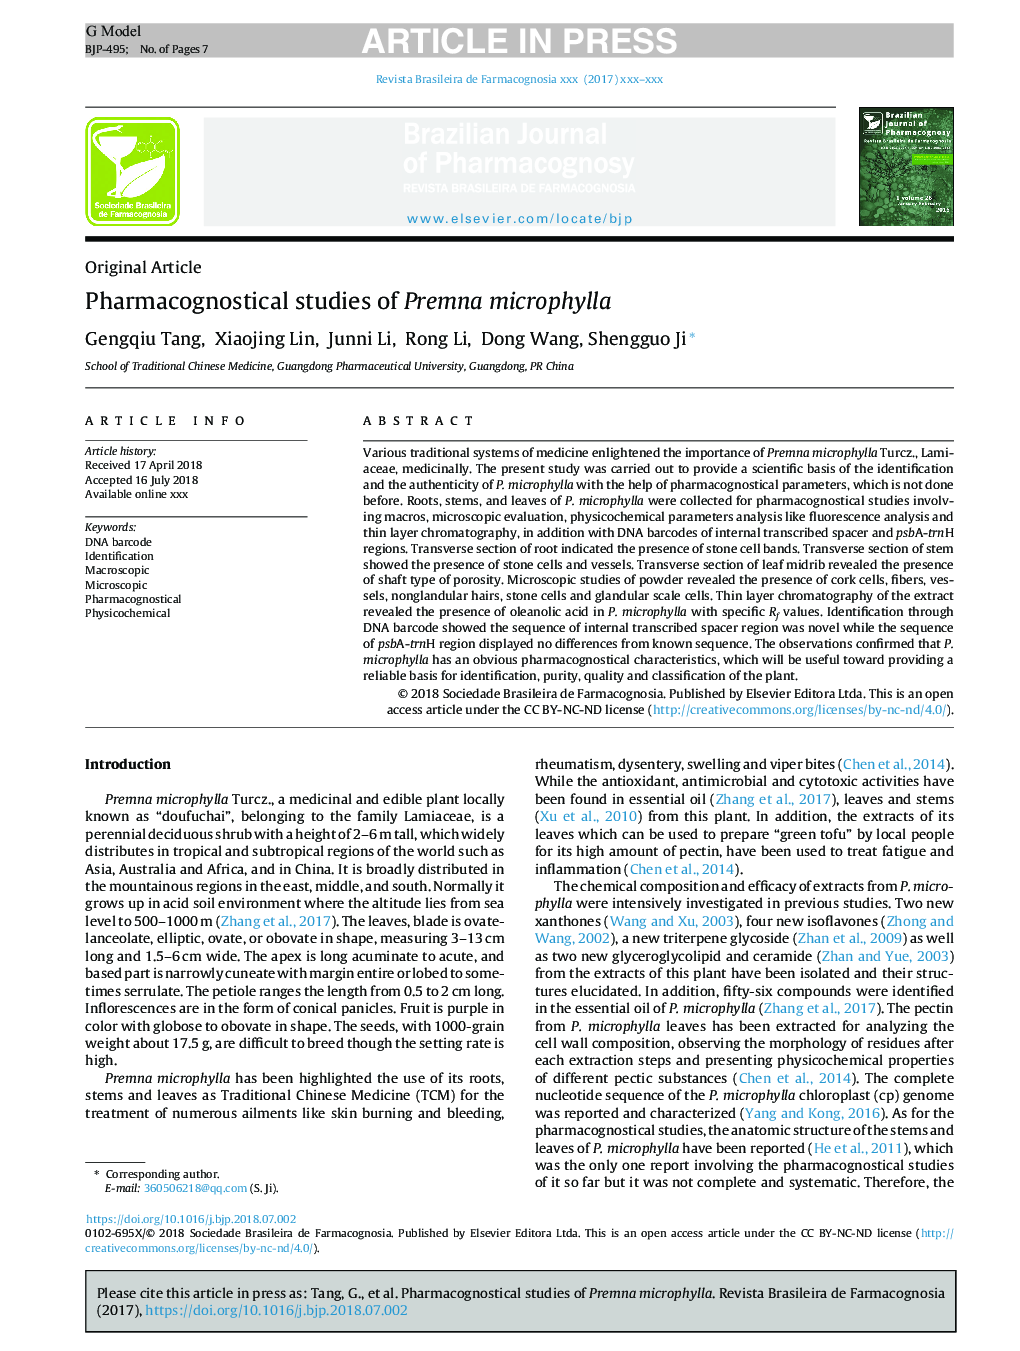 Pharmacognostical studies of Premna microphylla